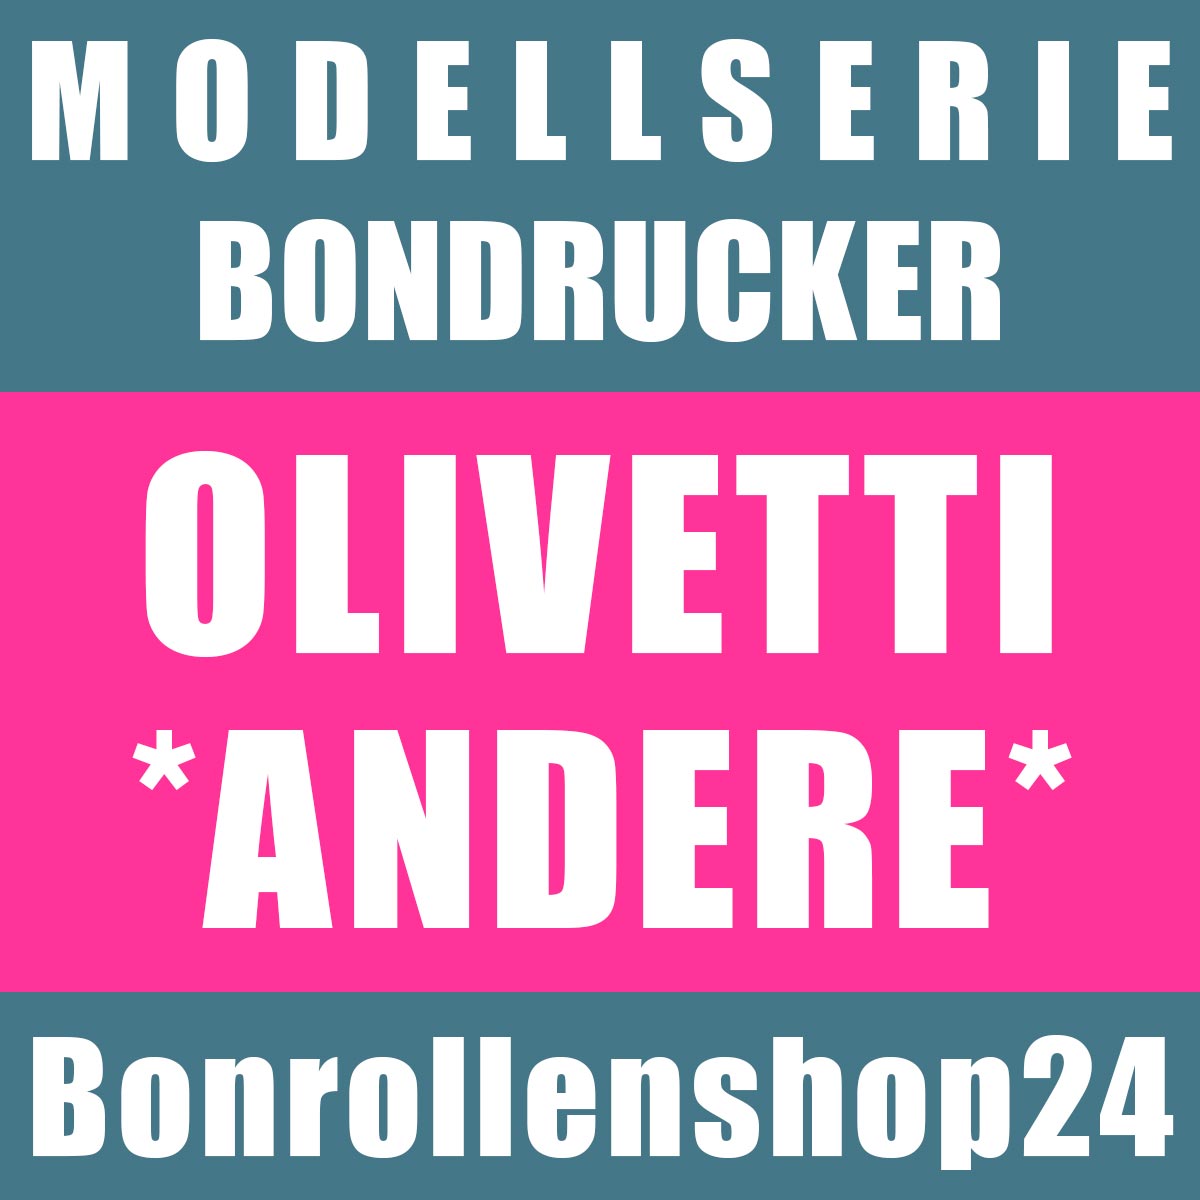 Bonrollen für andere Bondrucker des Herstellers Olivetti